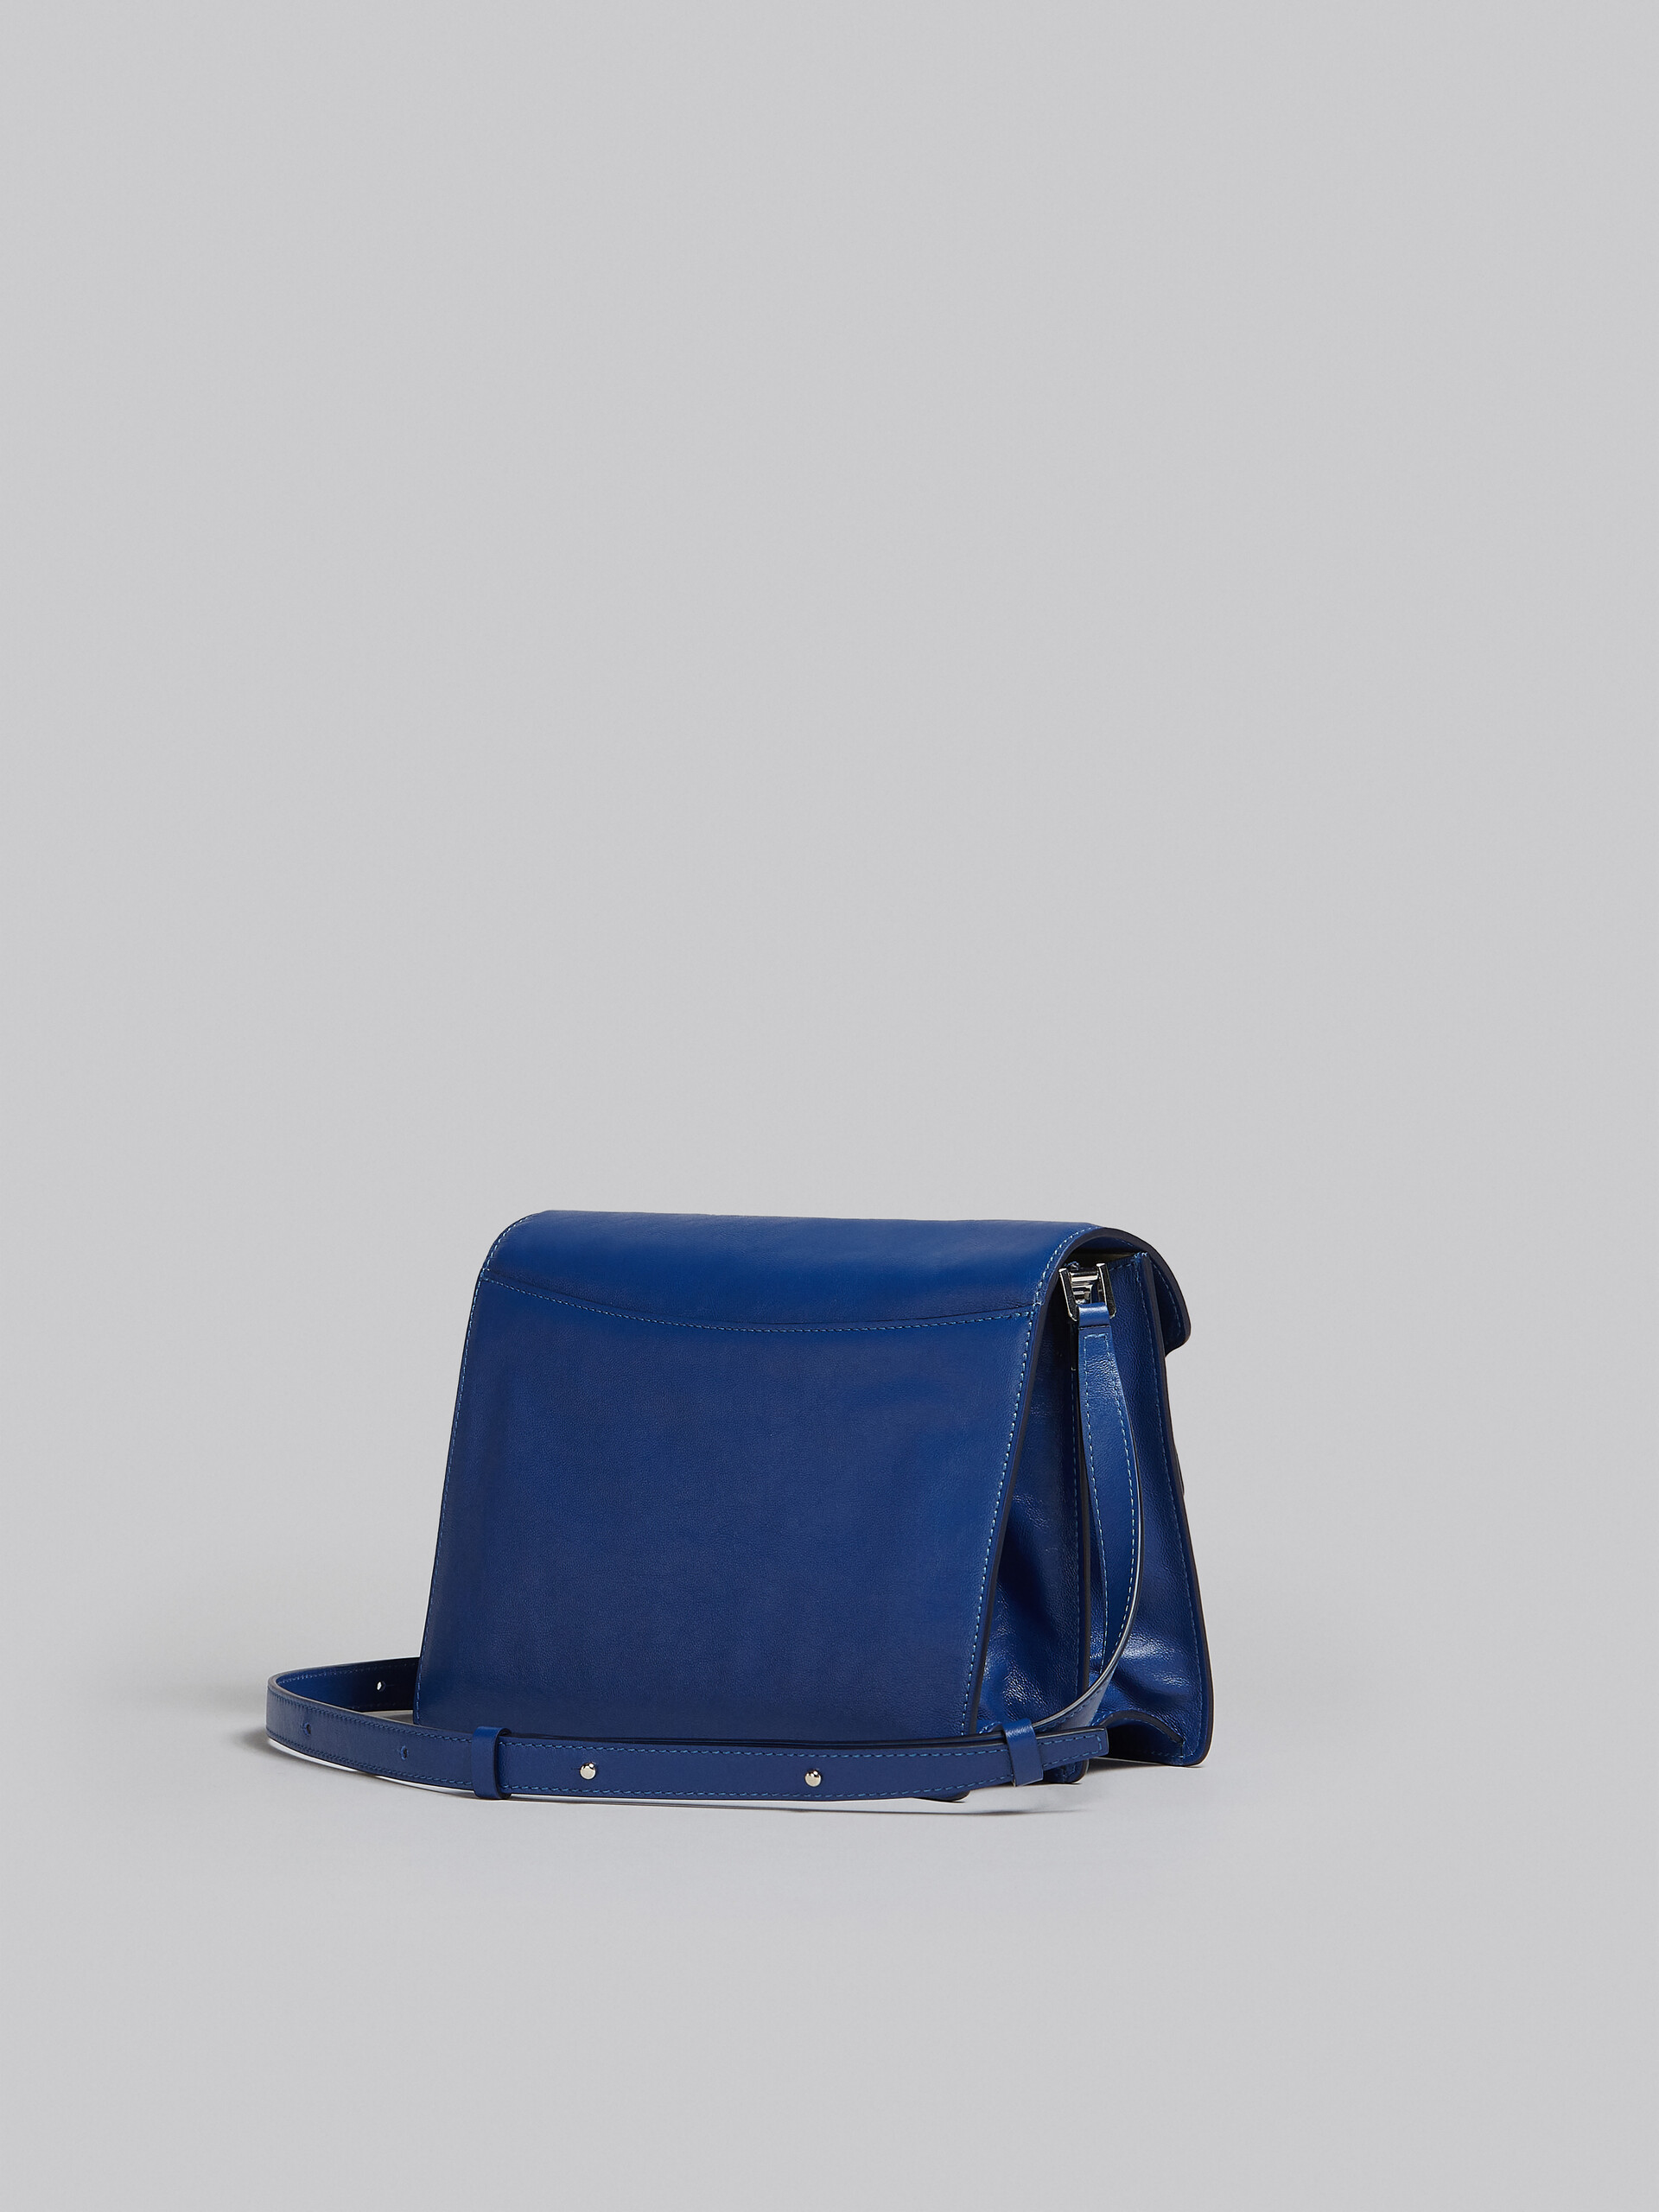 Trunk Soft Large Bag in blue leather - Shoulder Bag - Image 3